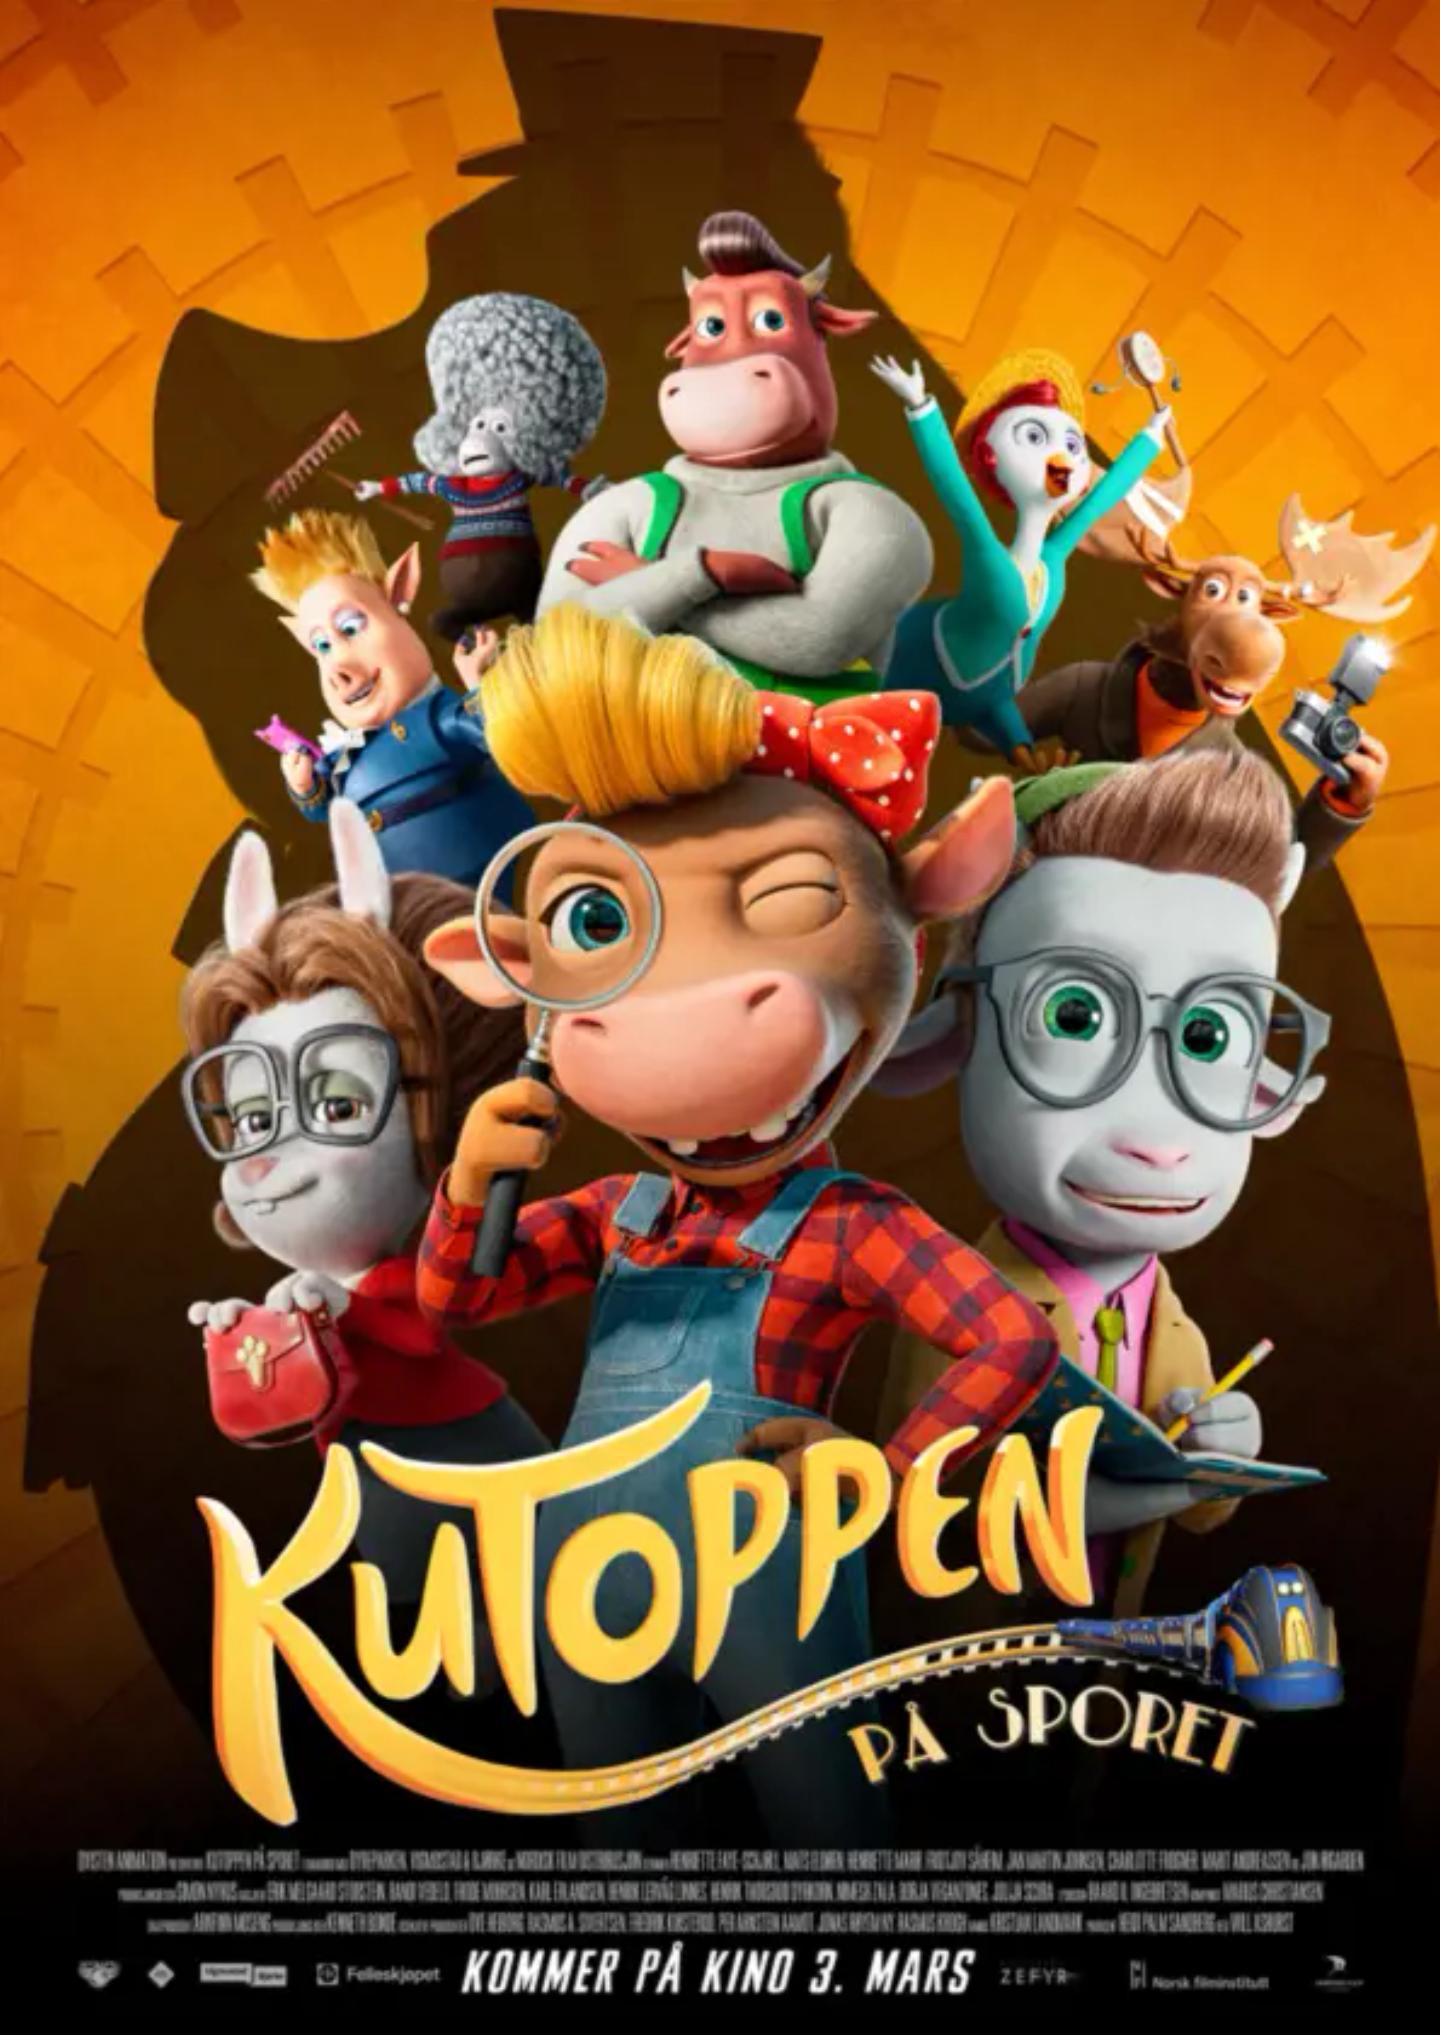 Plakat for 'KuToppen - På sporet'